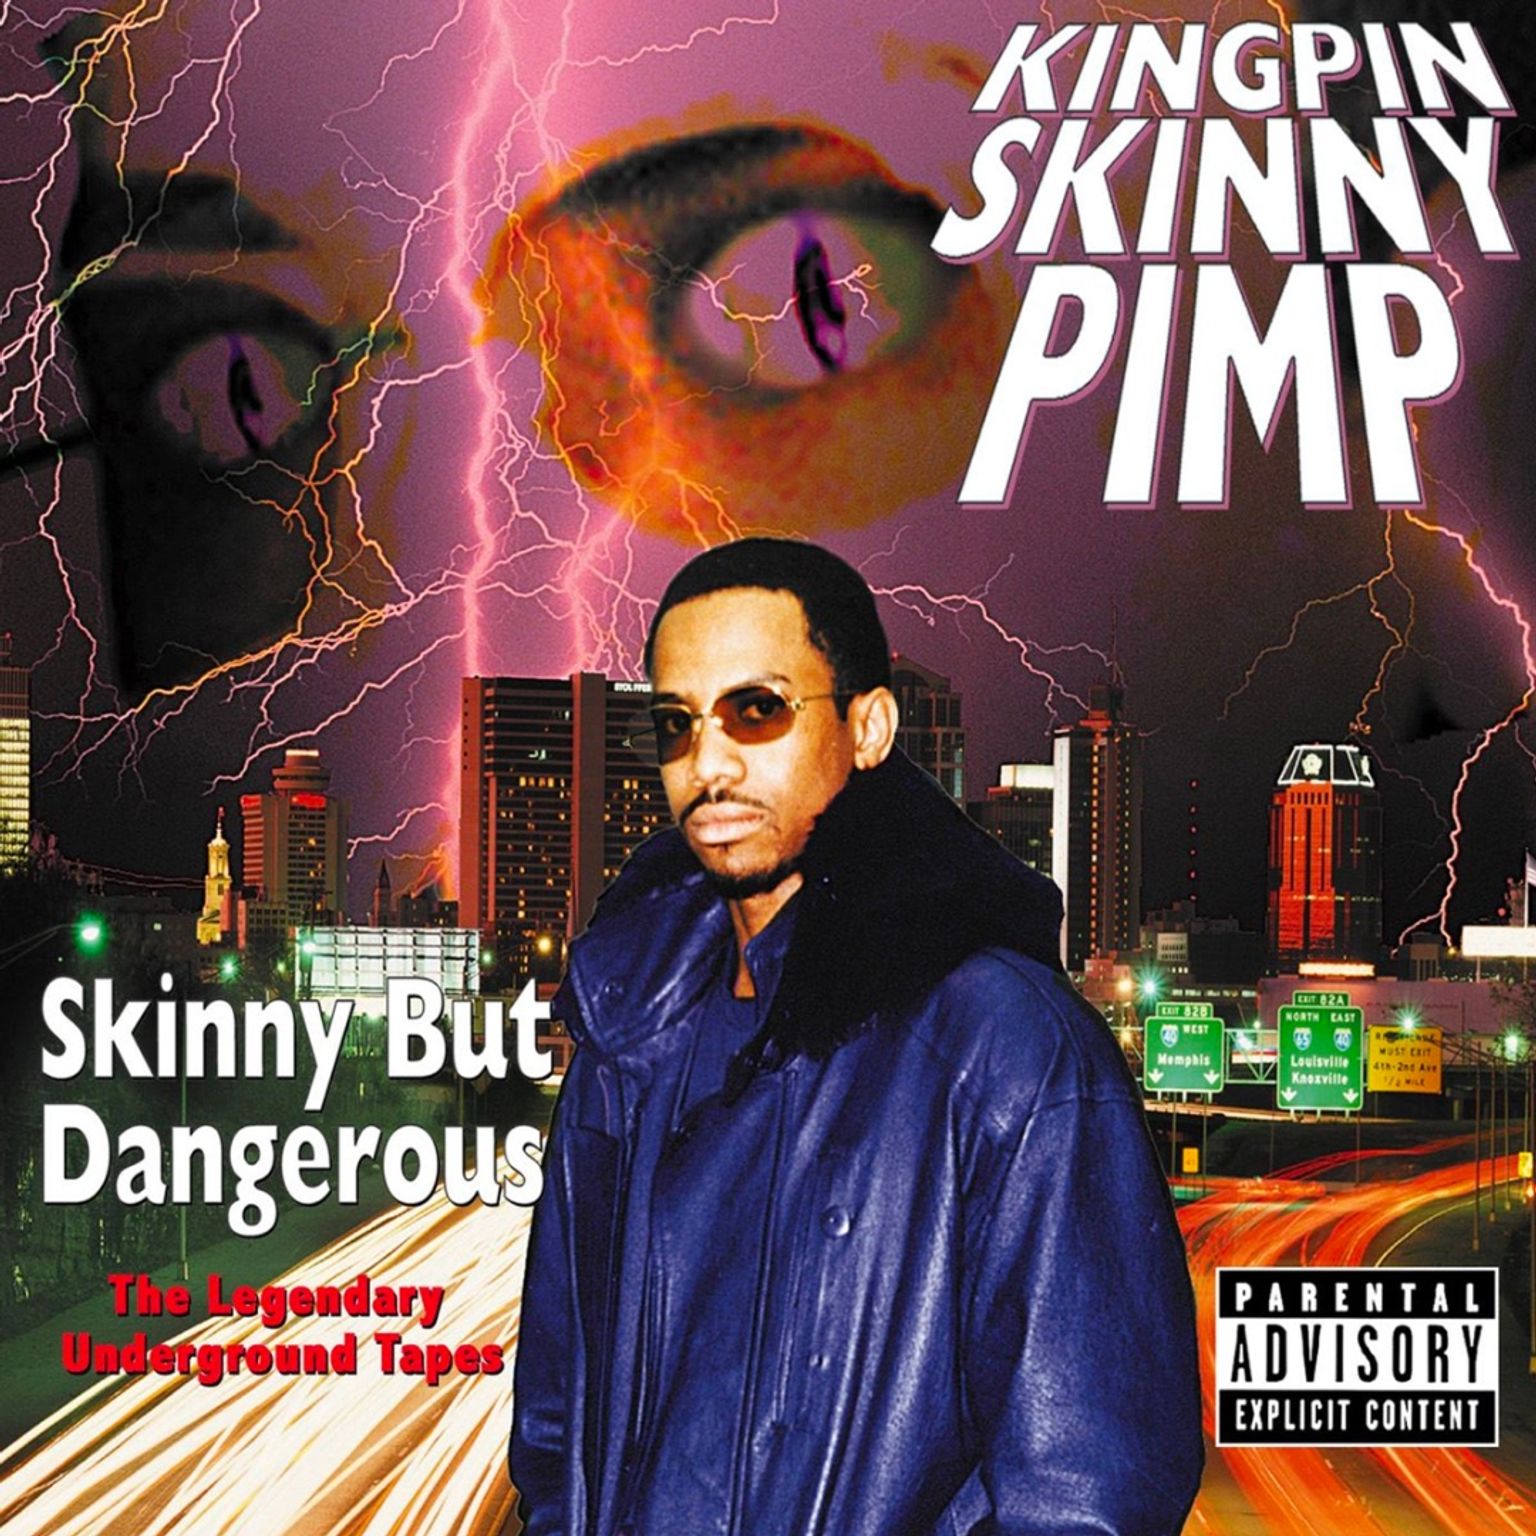 Kingpin_Skinny_Pimp_Skinny_But_Dangerous